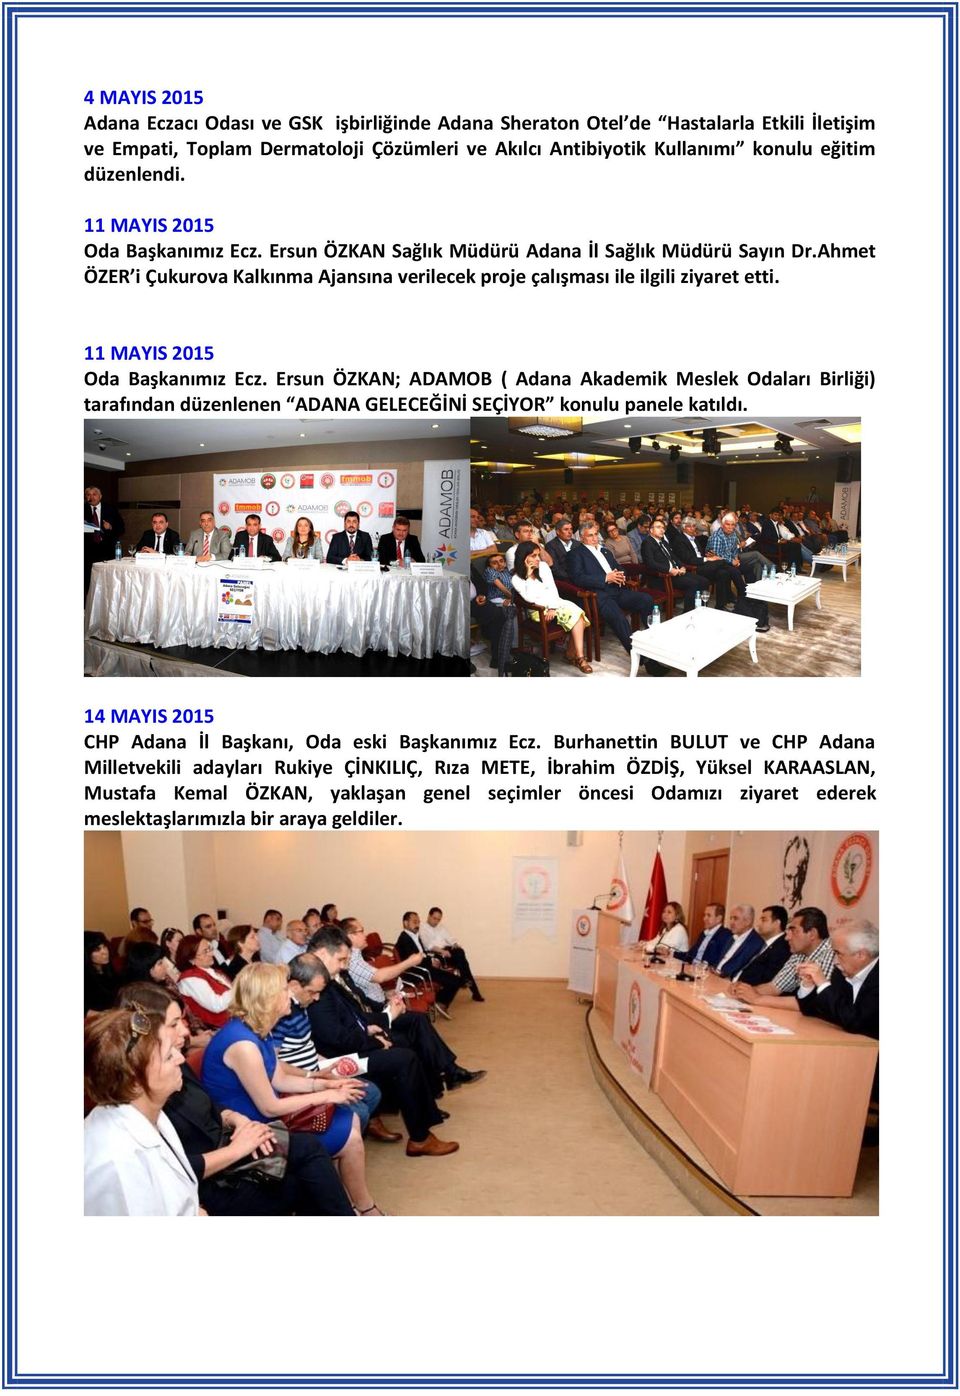 11 MAYIS 2015 Oda Başkanımız Ecz. Ersun ÖZKAN; ADAMOB ( Adana Akademik Meslek Odaları Birliği) tarafından düzenlenen ADANA GELECEĞİNİ SEÇİYOR konulu panele katıldı.